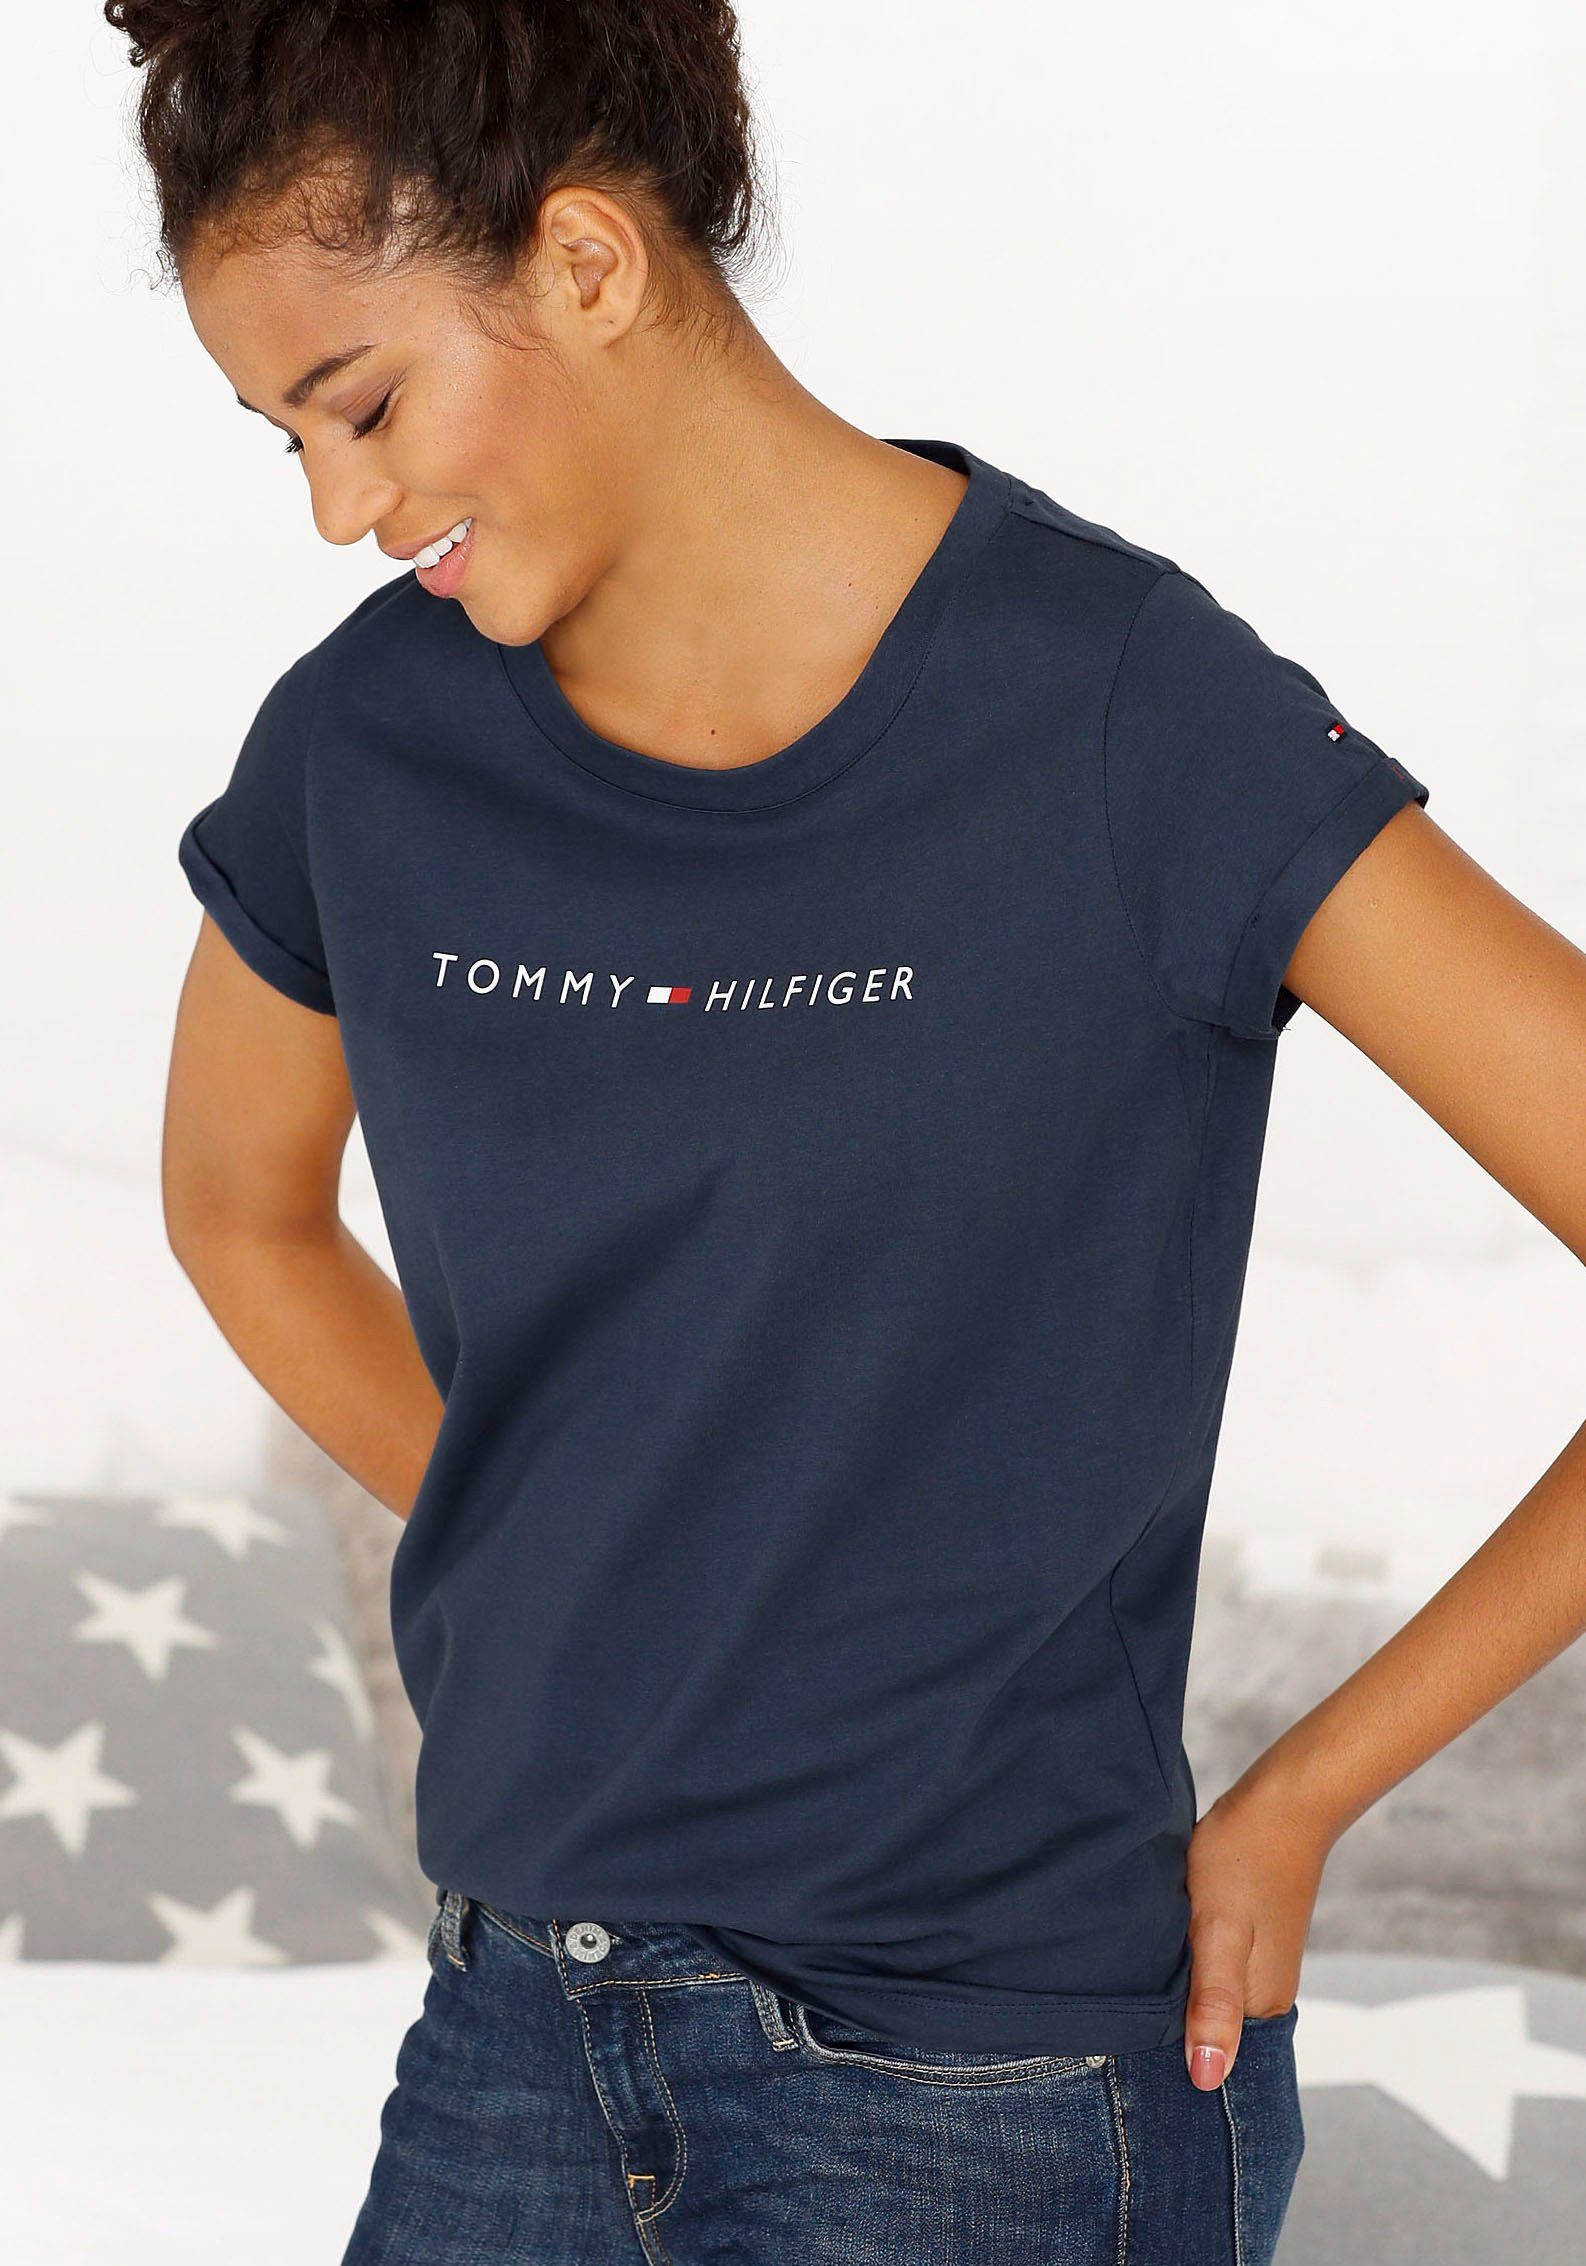 Shirts für Damen online kaufen | OTTO